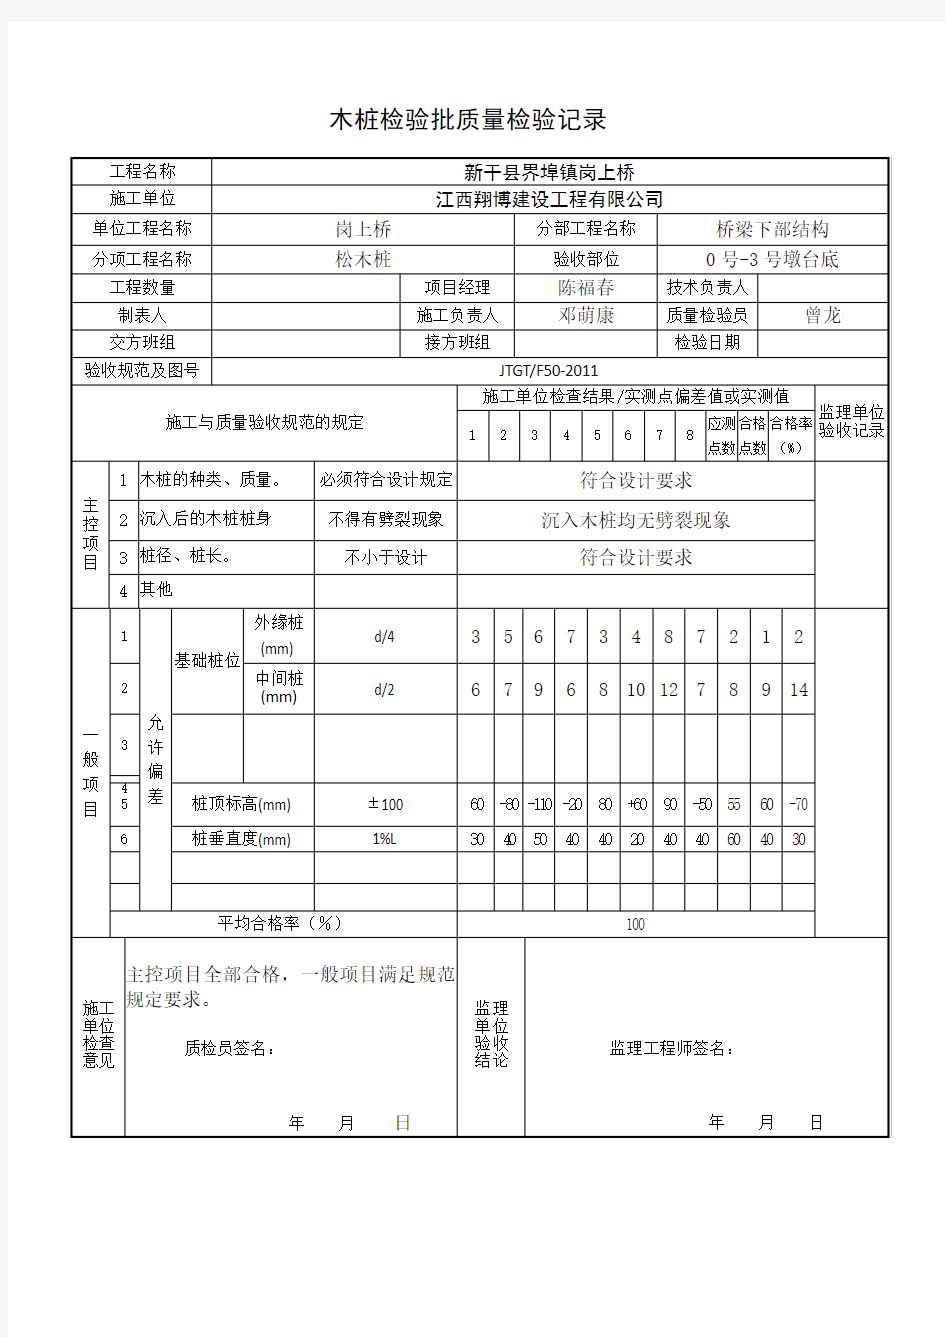 2(松木桩检验验收表)